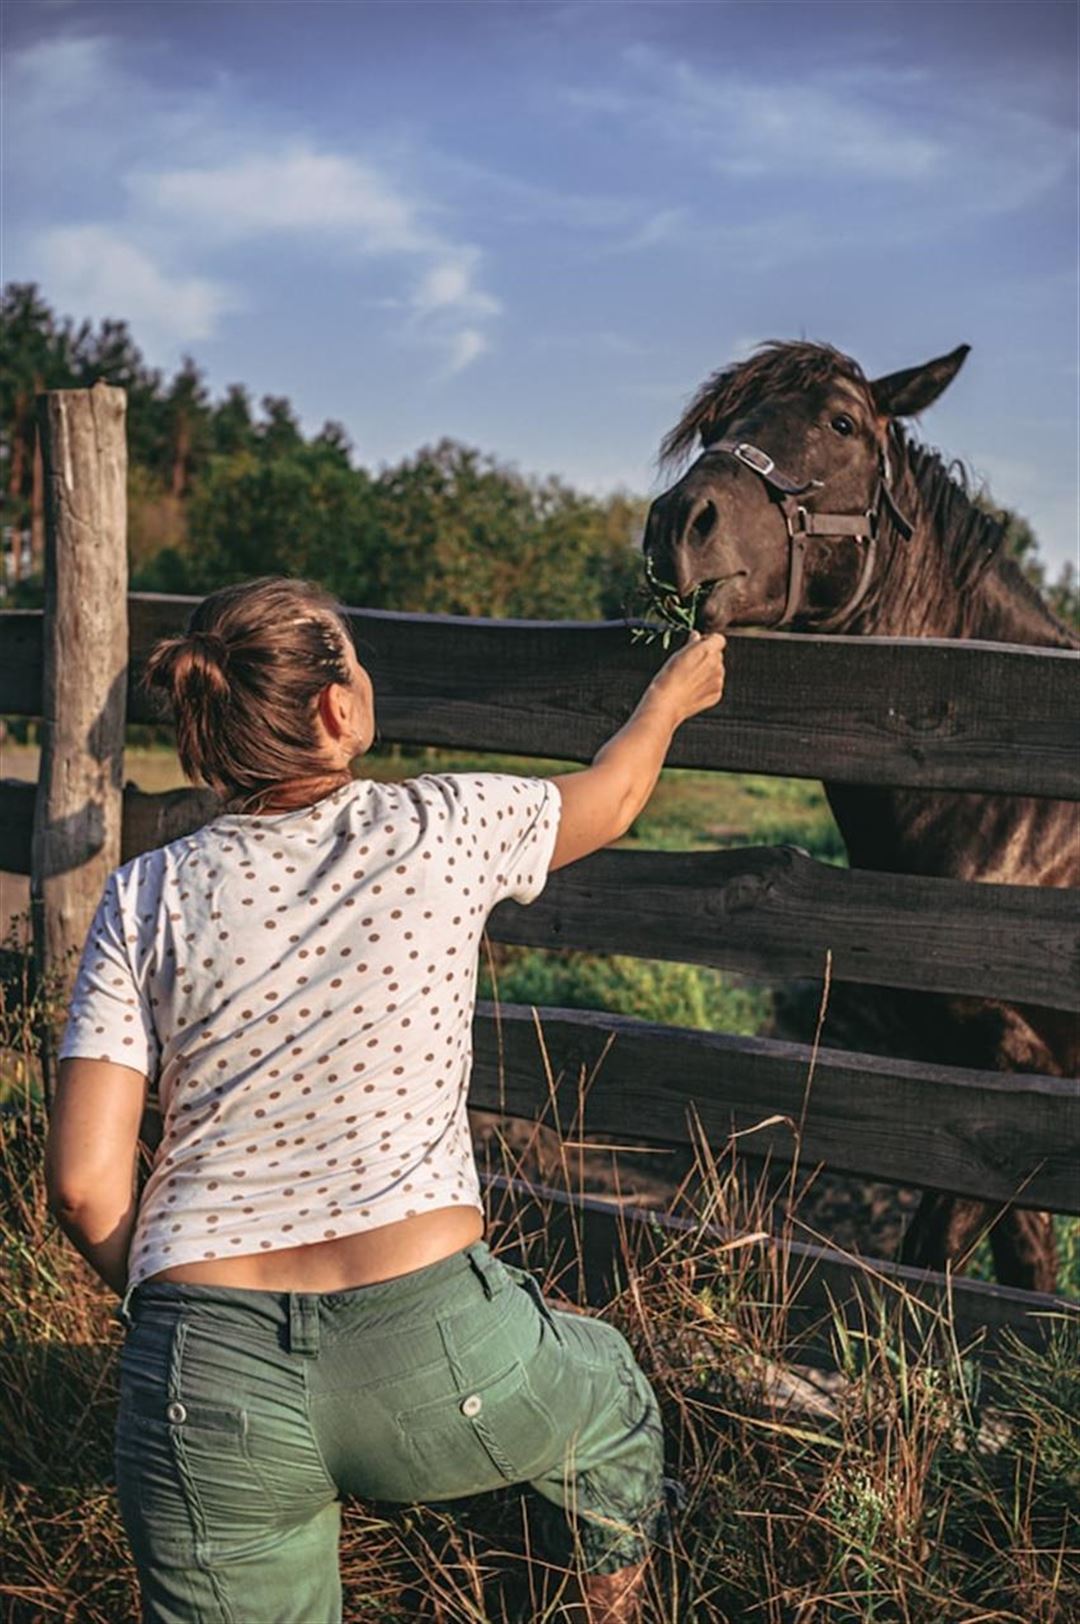 St. hippolyts linfröolja häst – en kraftkälla för hästens välbefinnande